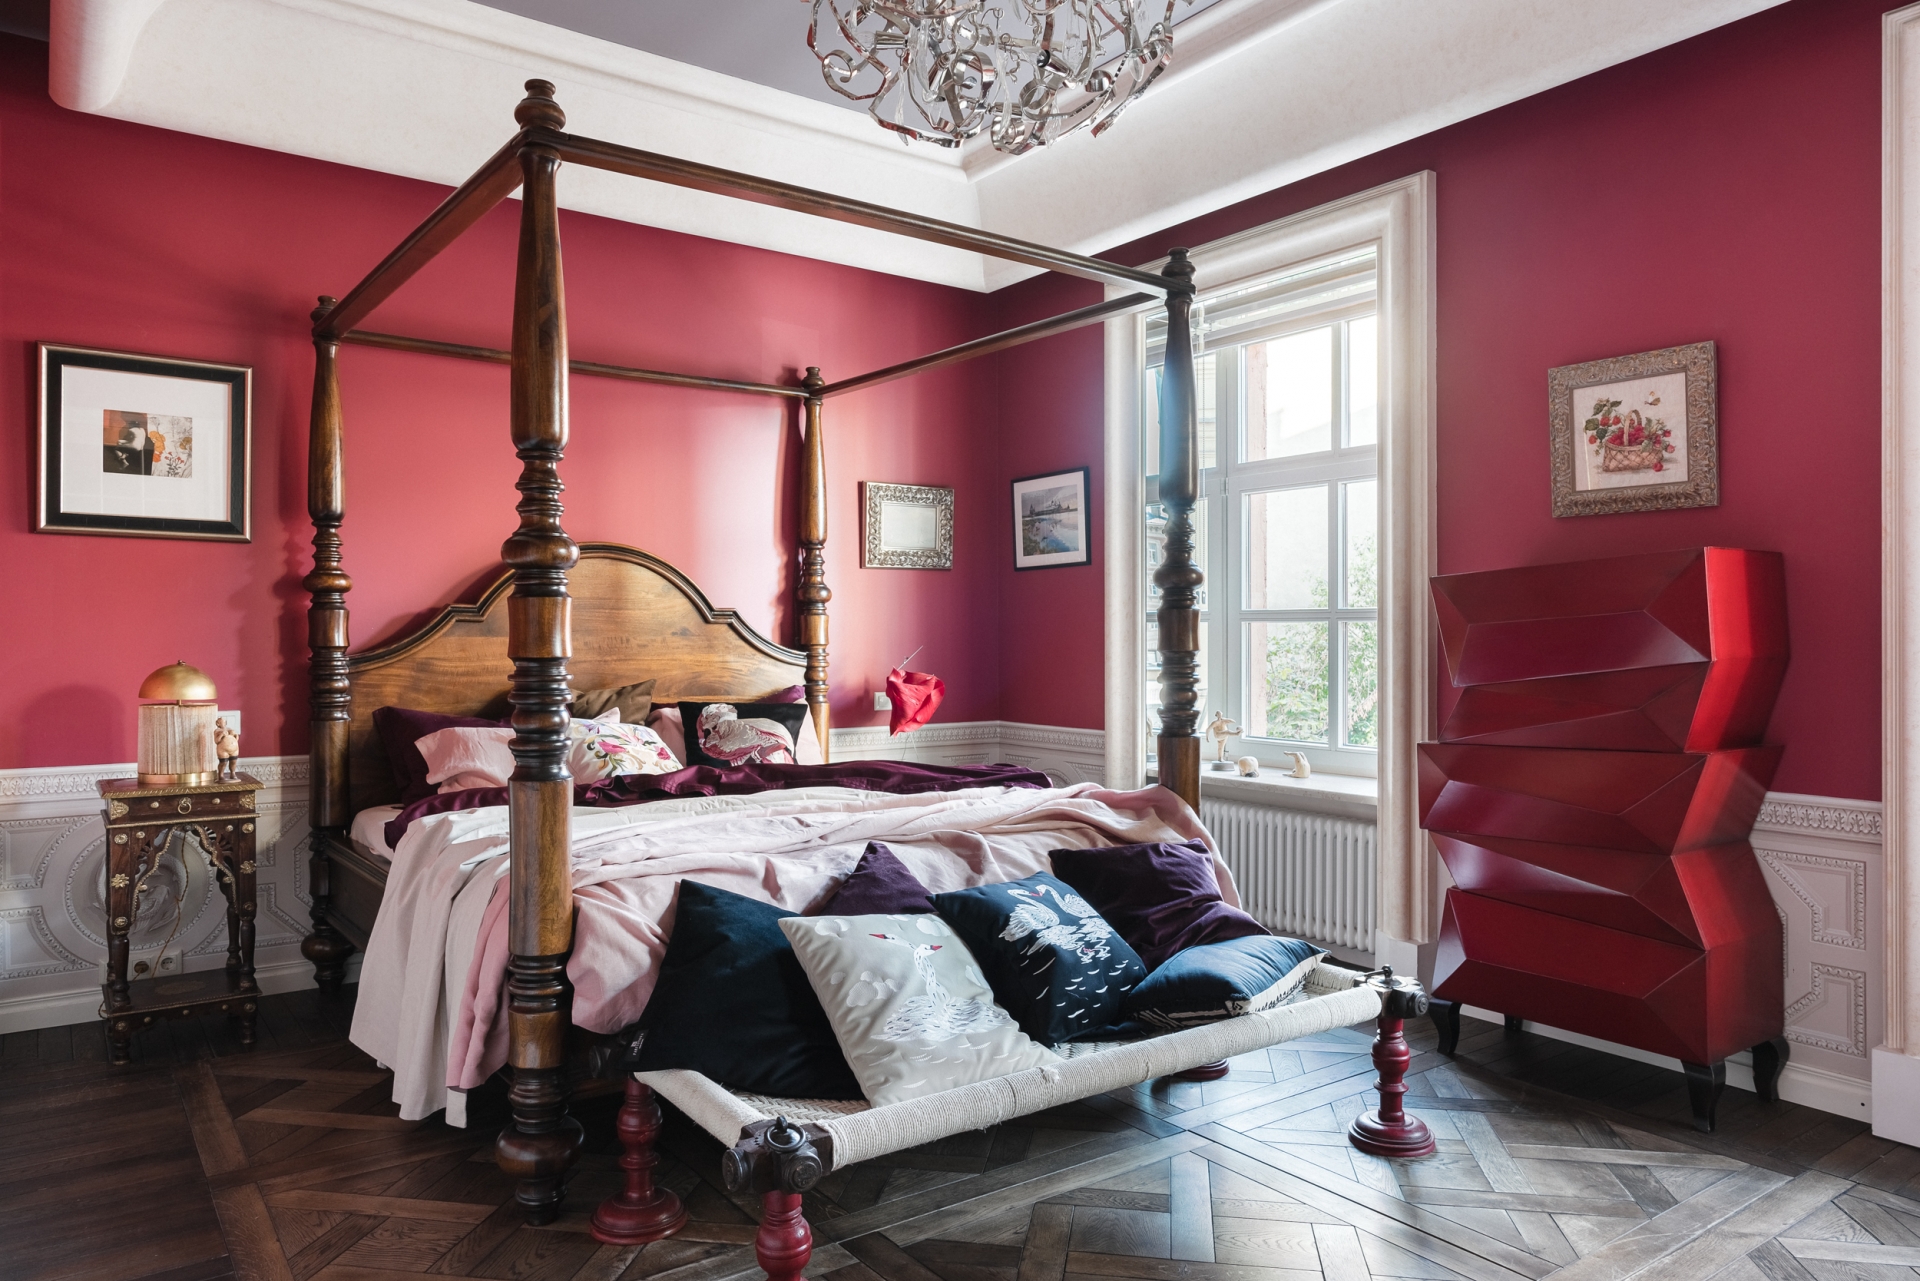 Phòng ngủ thiết kế theo phong cách cổ điển với sàn gỗ ấm áp, tường và trần là sự phối màu giữa sắc trắng - đỏ tía mang đến cảm giác ấm cúng trong tiết trời se lạnh.